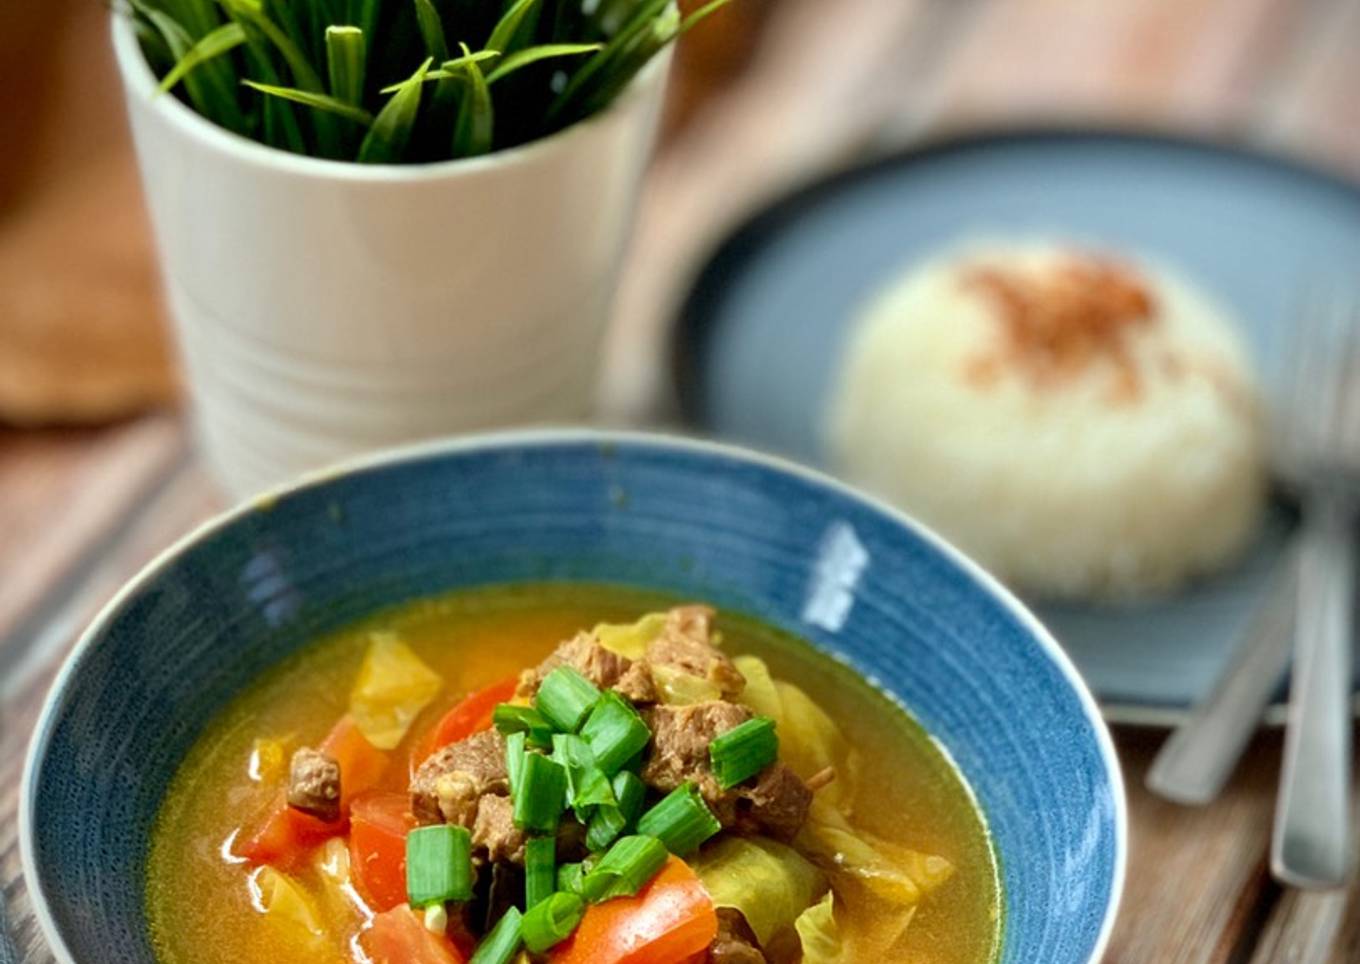 Shank Beef Soup - Tongseng Sengkel Sapi